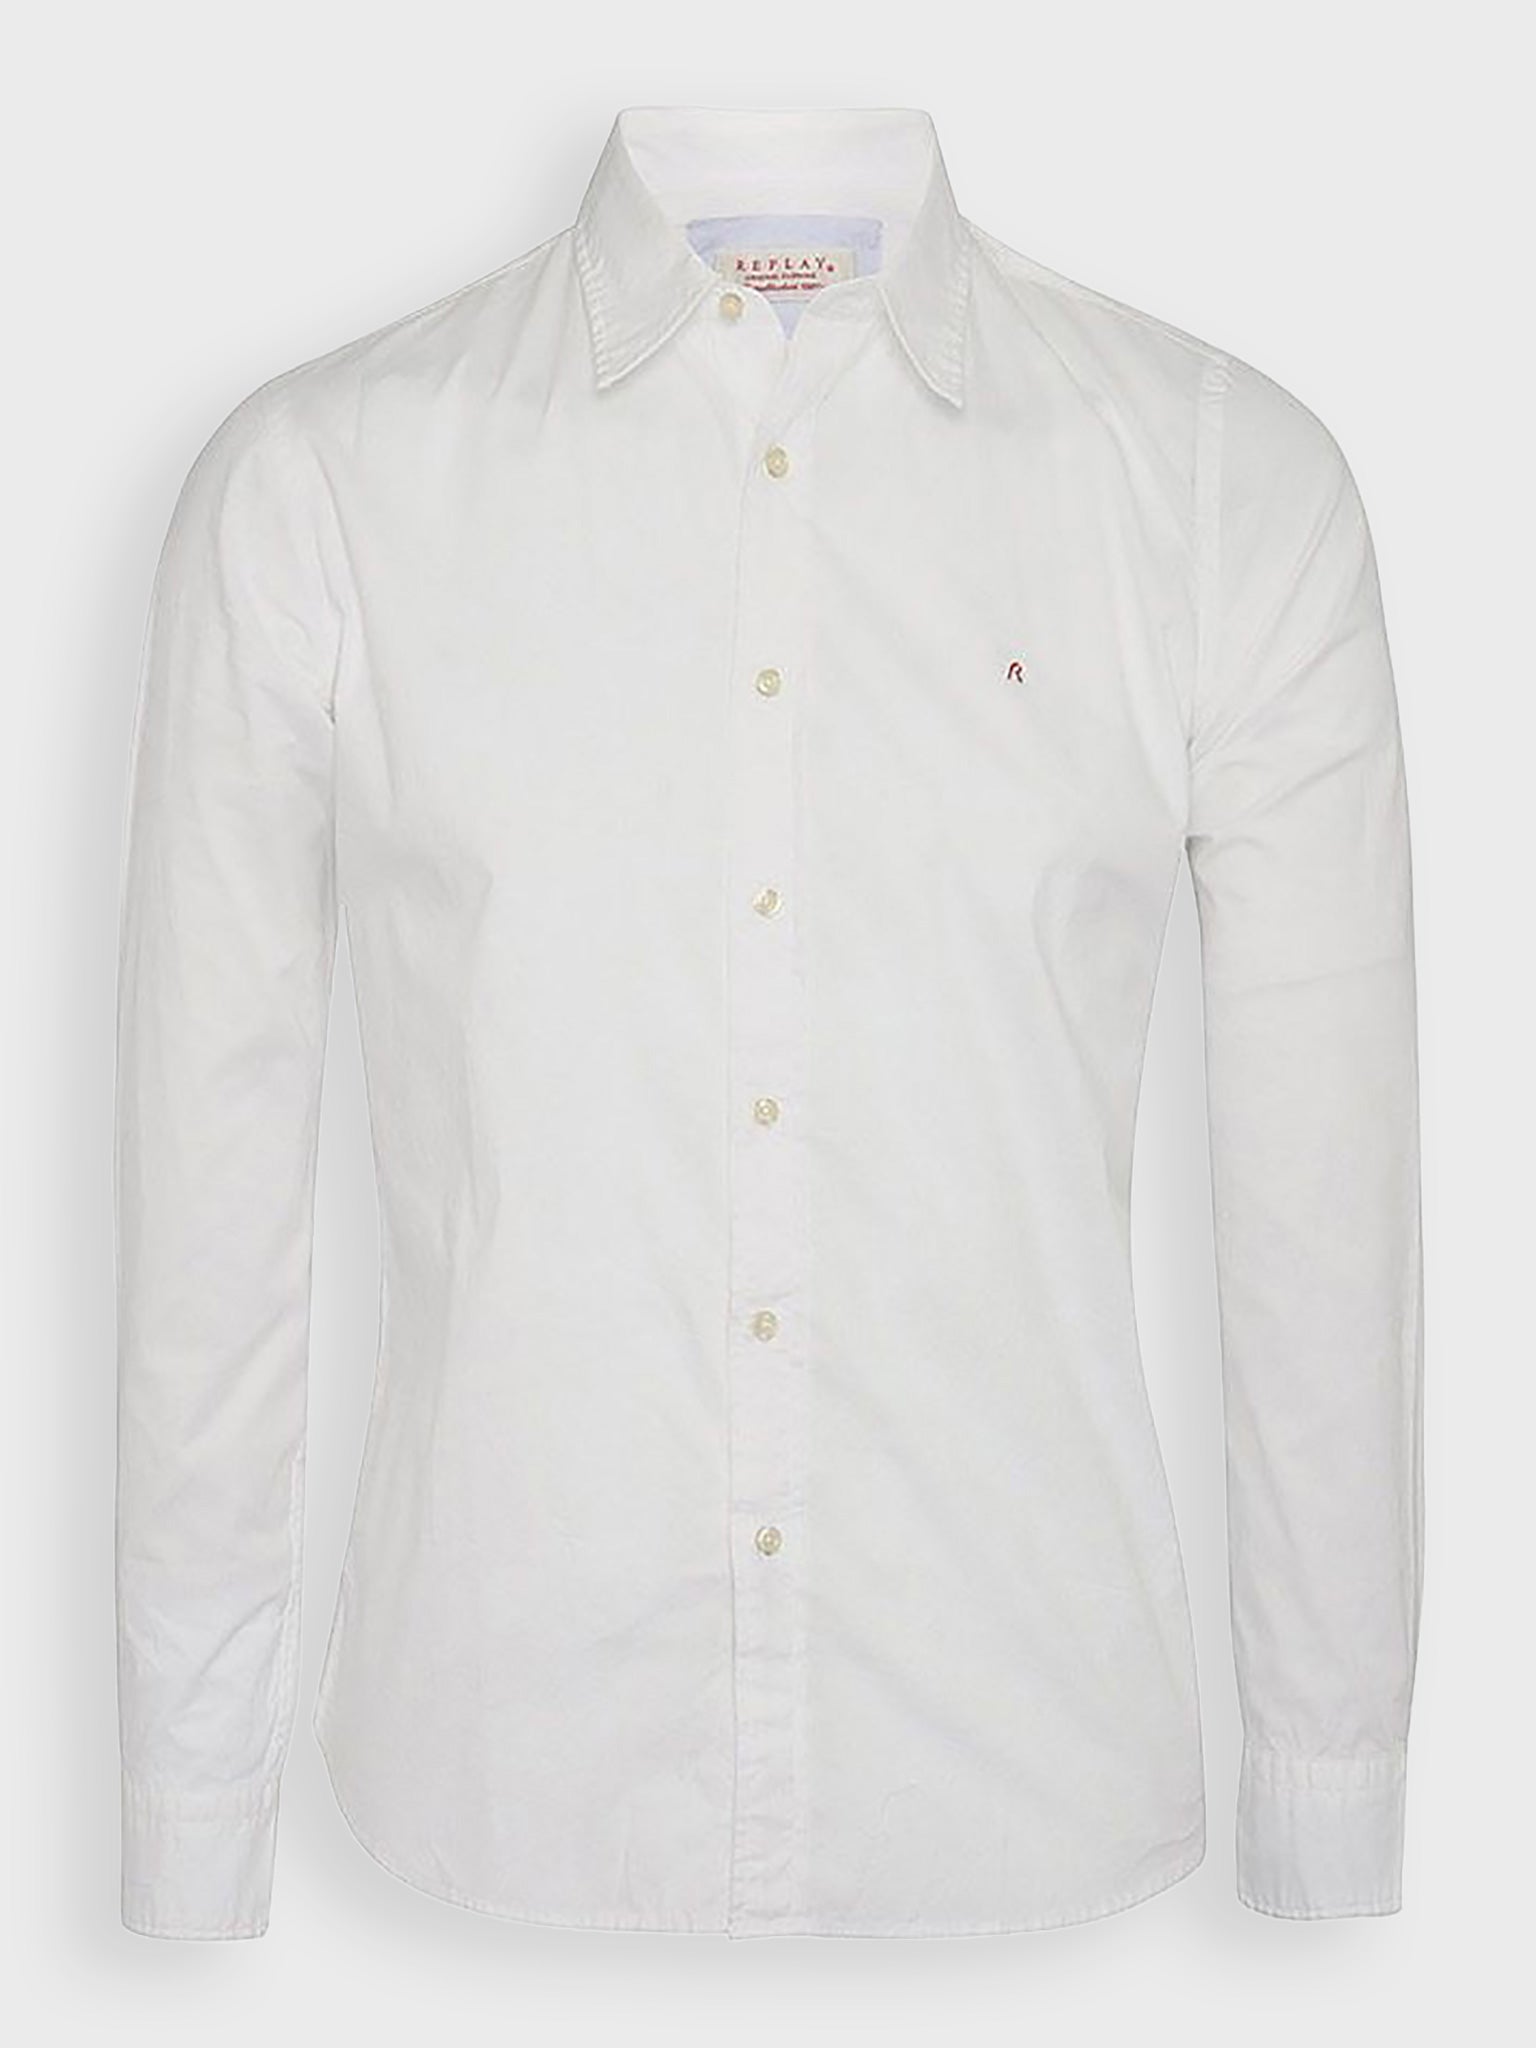 Ανδρικό πουκάμισο μονόχρωμο βαμβακερό | M4738D.000.80279A